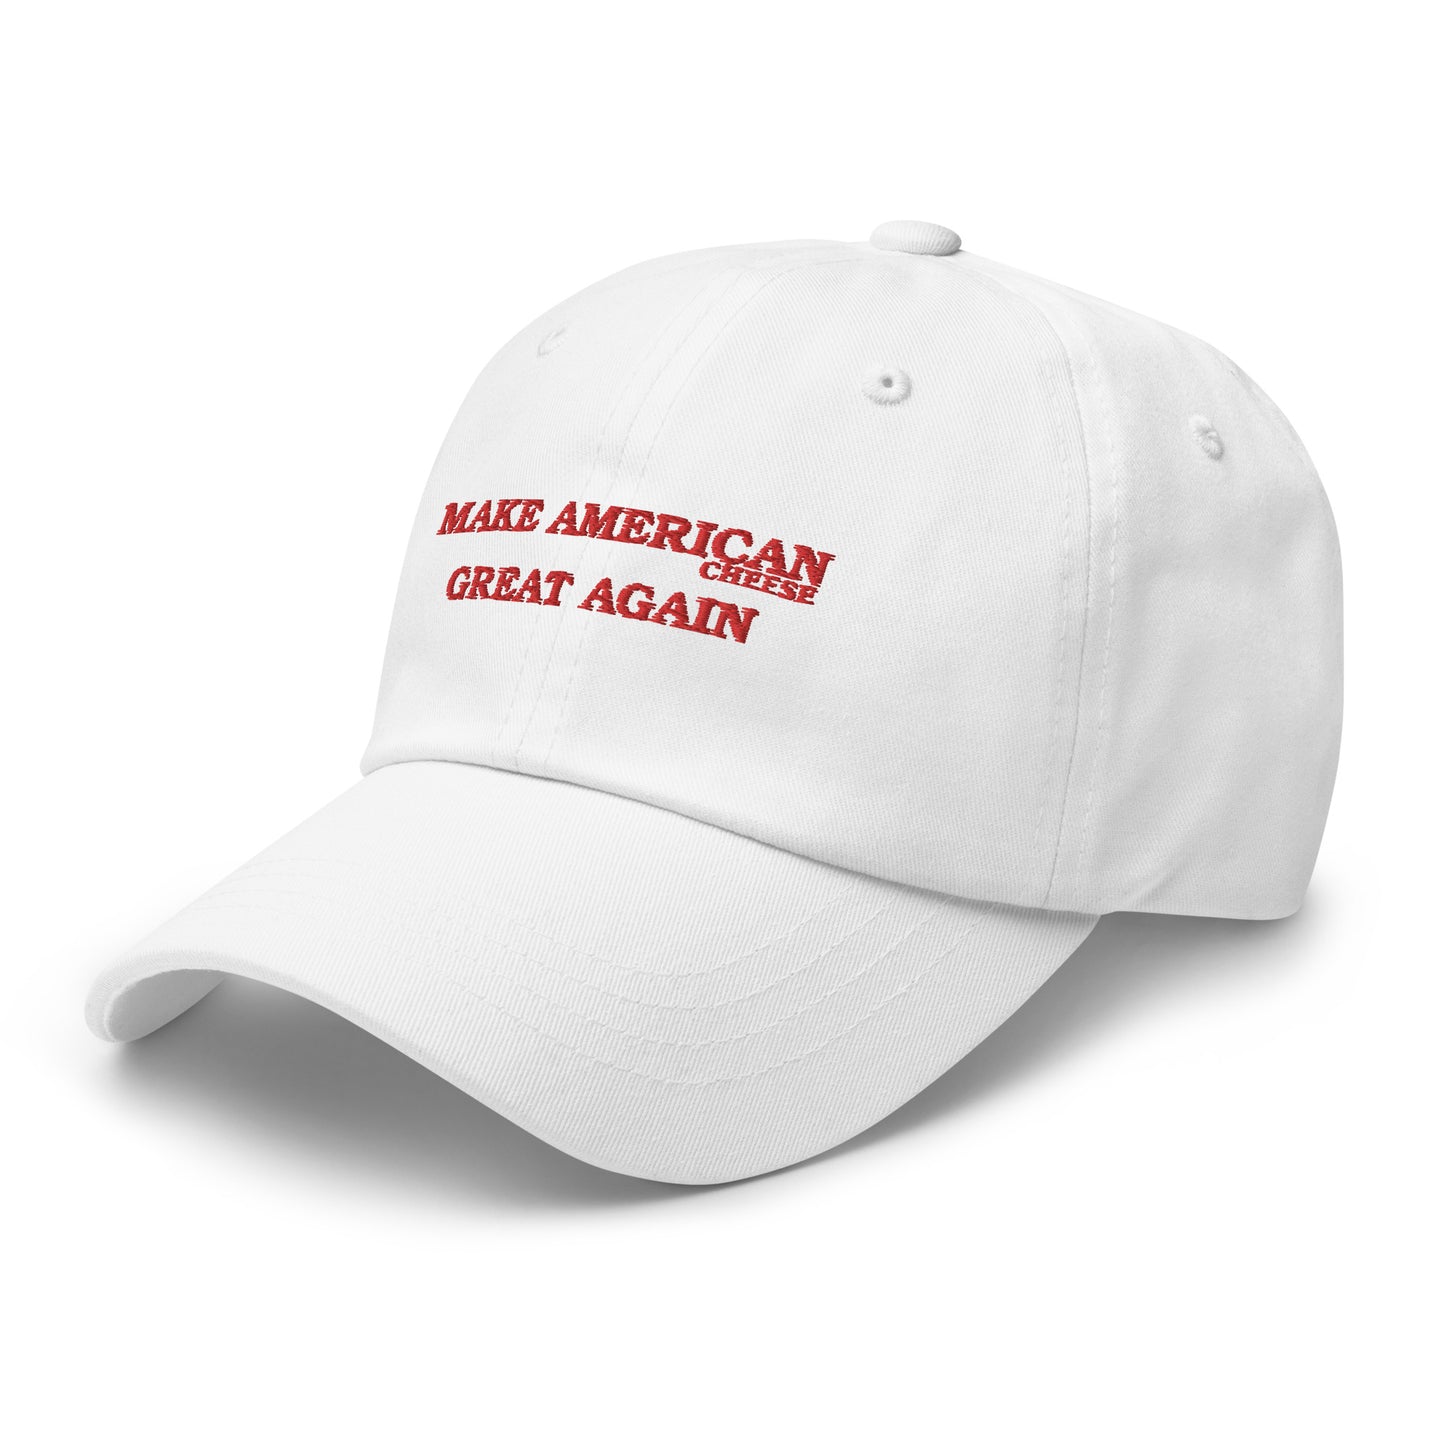 Real-MAGA white baseball cap